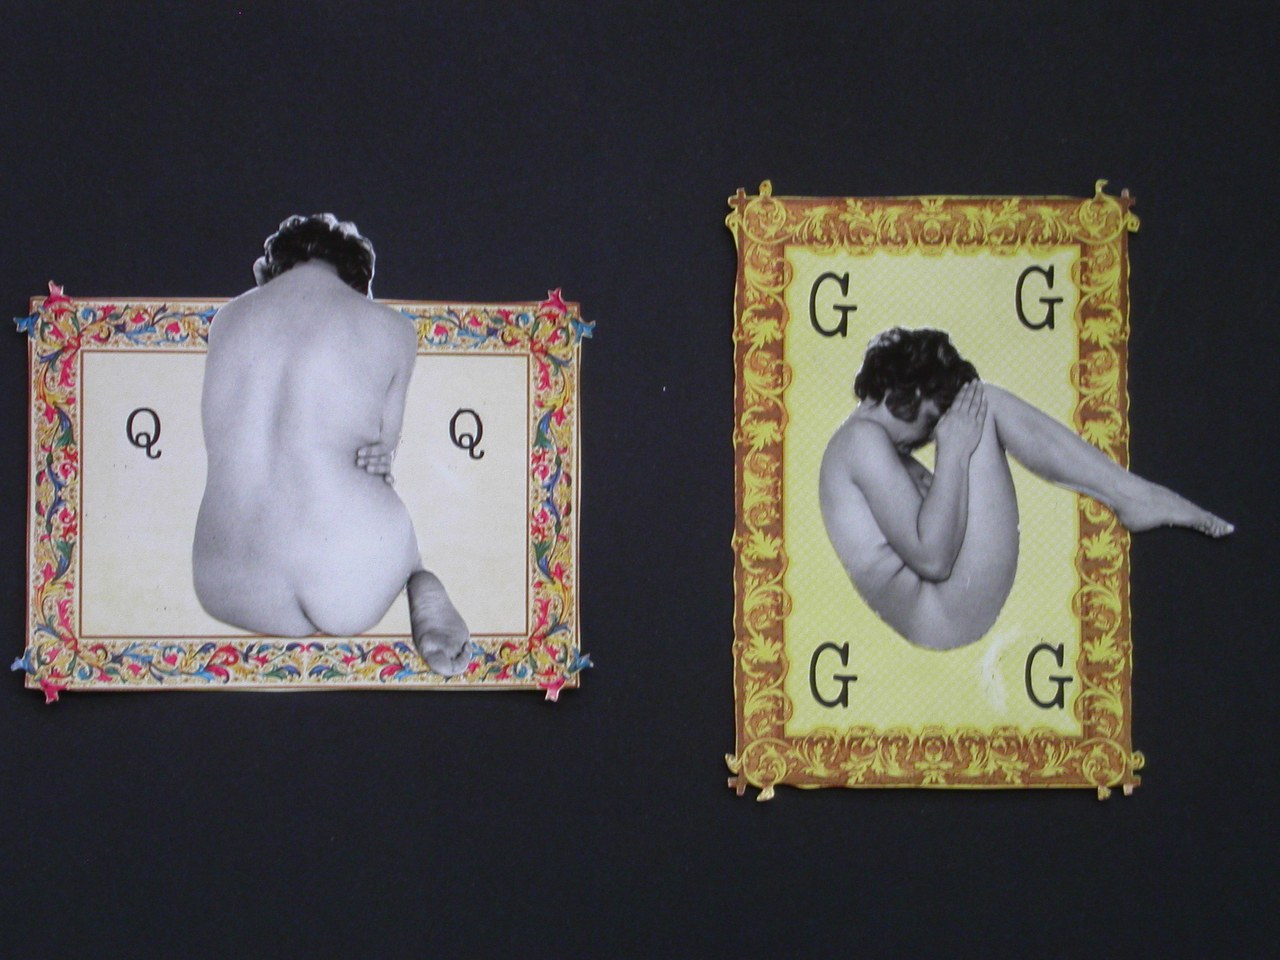 Tomaso Binga, da Scrittura vivente, Lettere in cornice (bozzetto della lettera Q), 1977, collage fotografico su carta prestampata